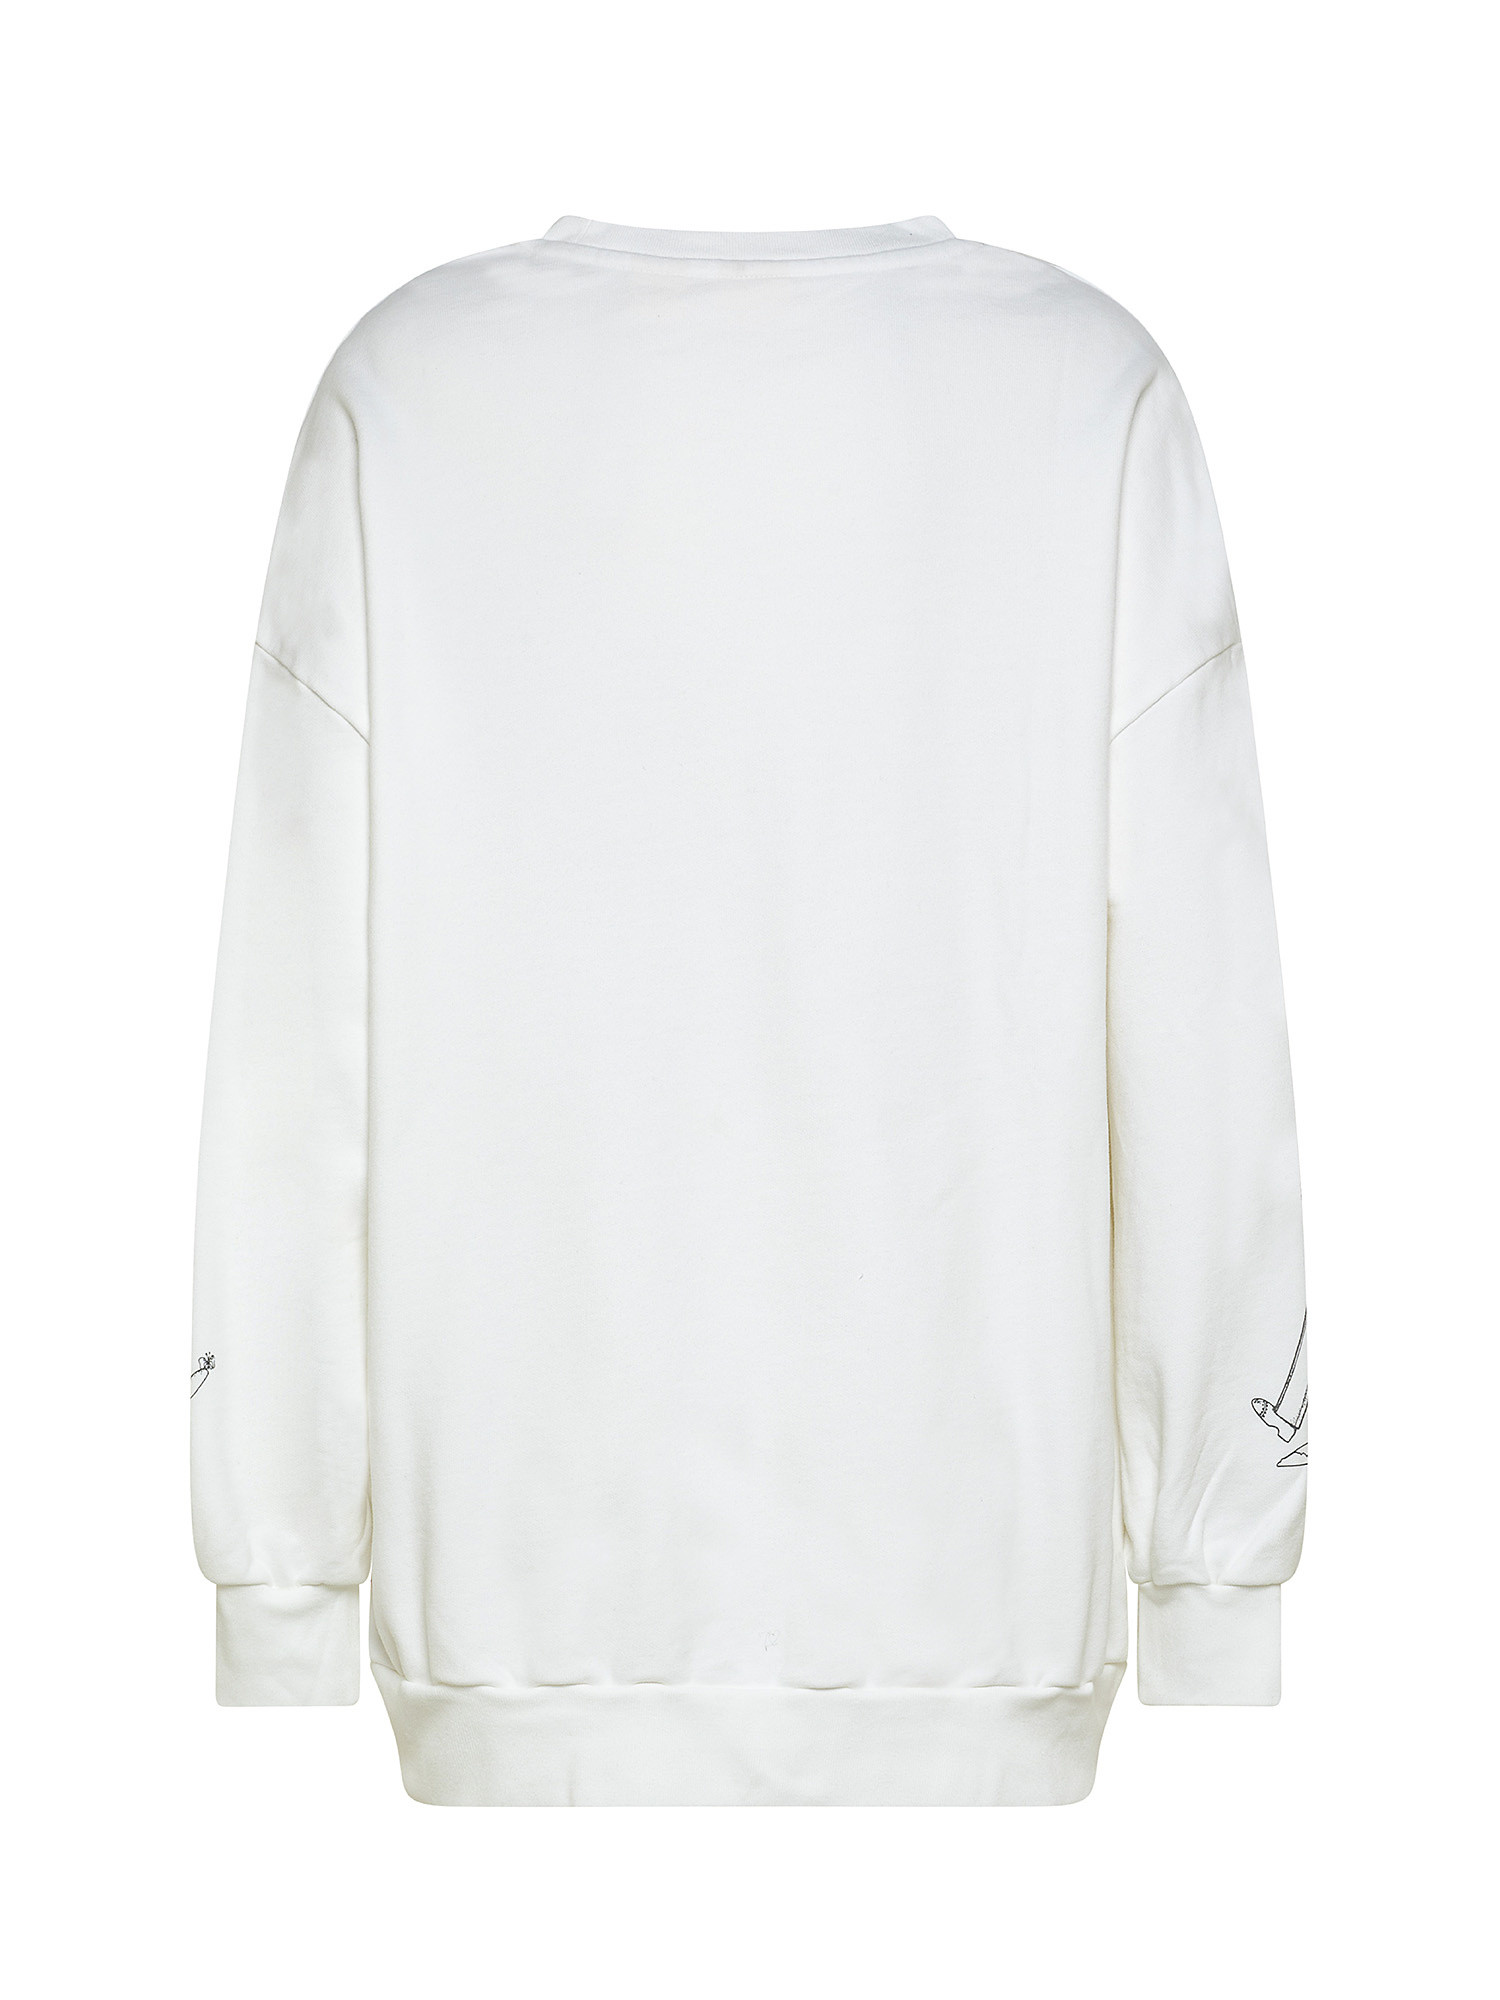 Prism printed crewneck sweatshirt, White, large image number 1